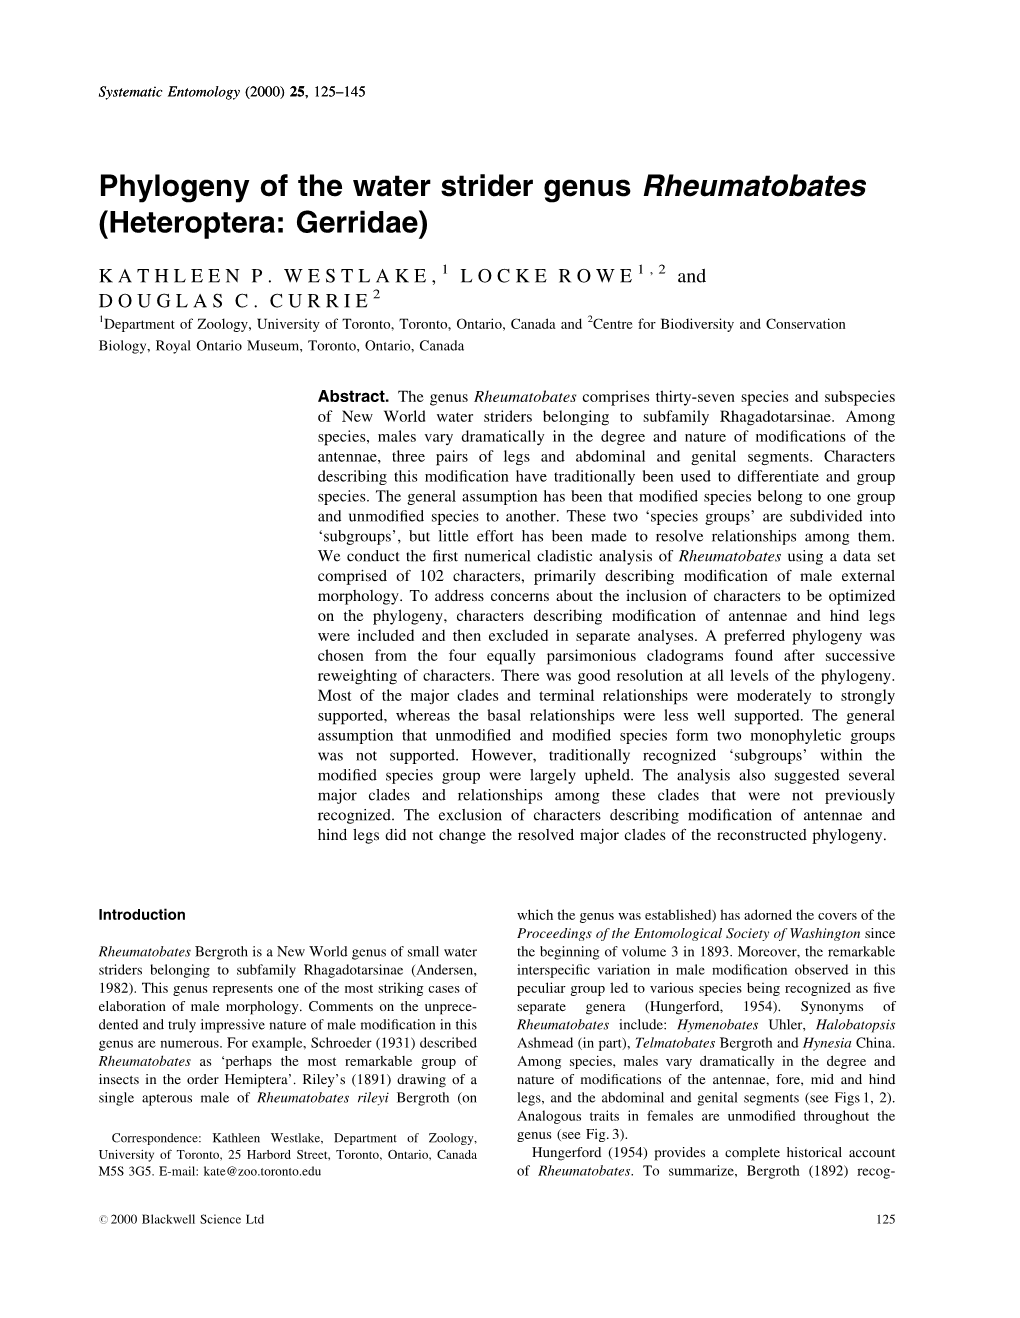 Phylogeny of the Water Strider Genus Rheumatobates (Heteroptera: Gerridae)